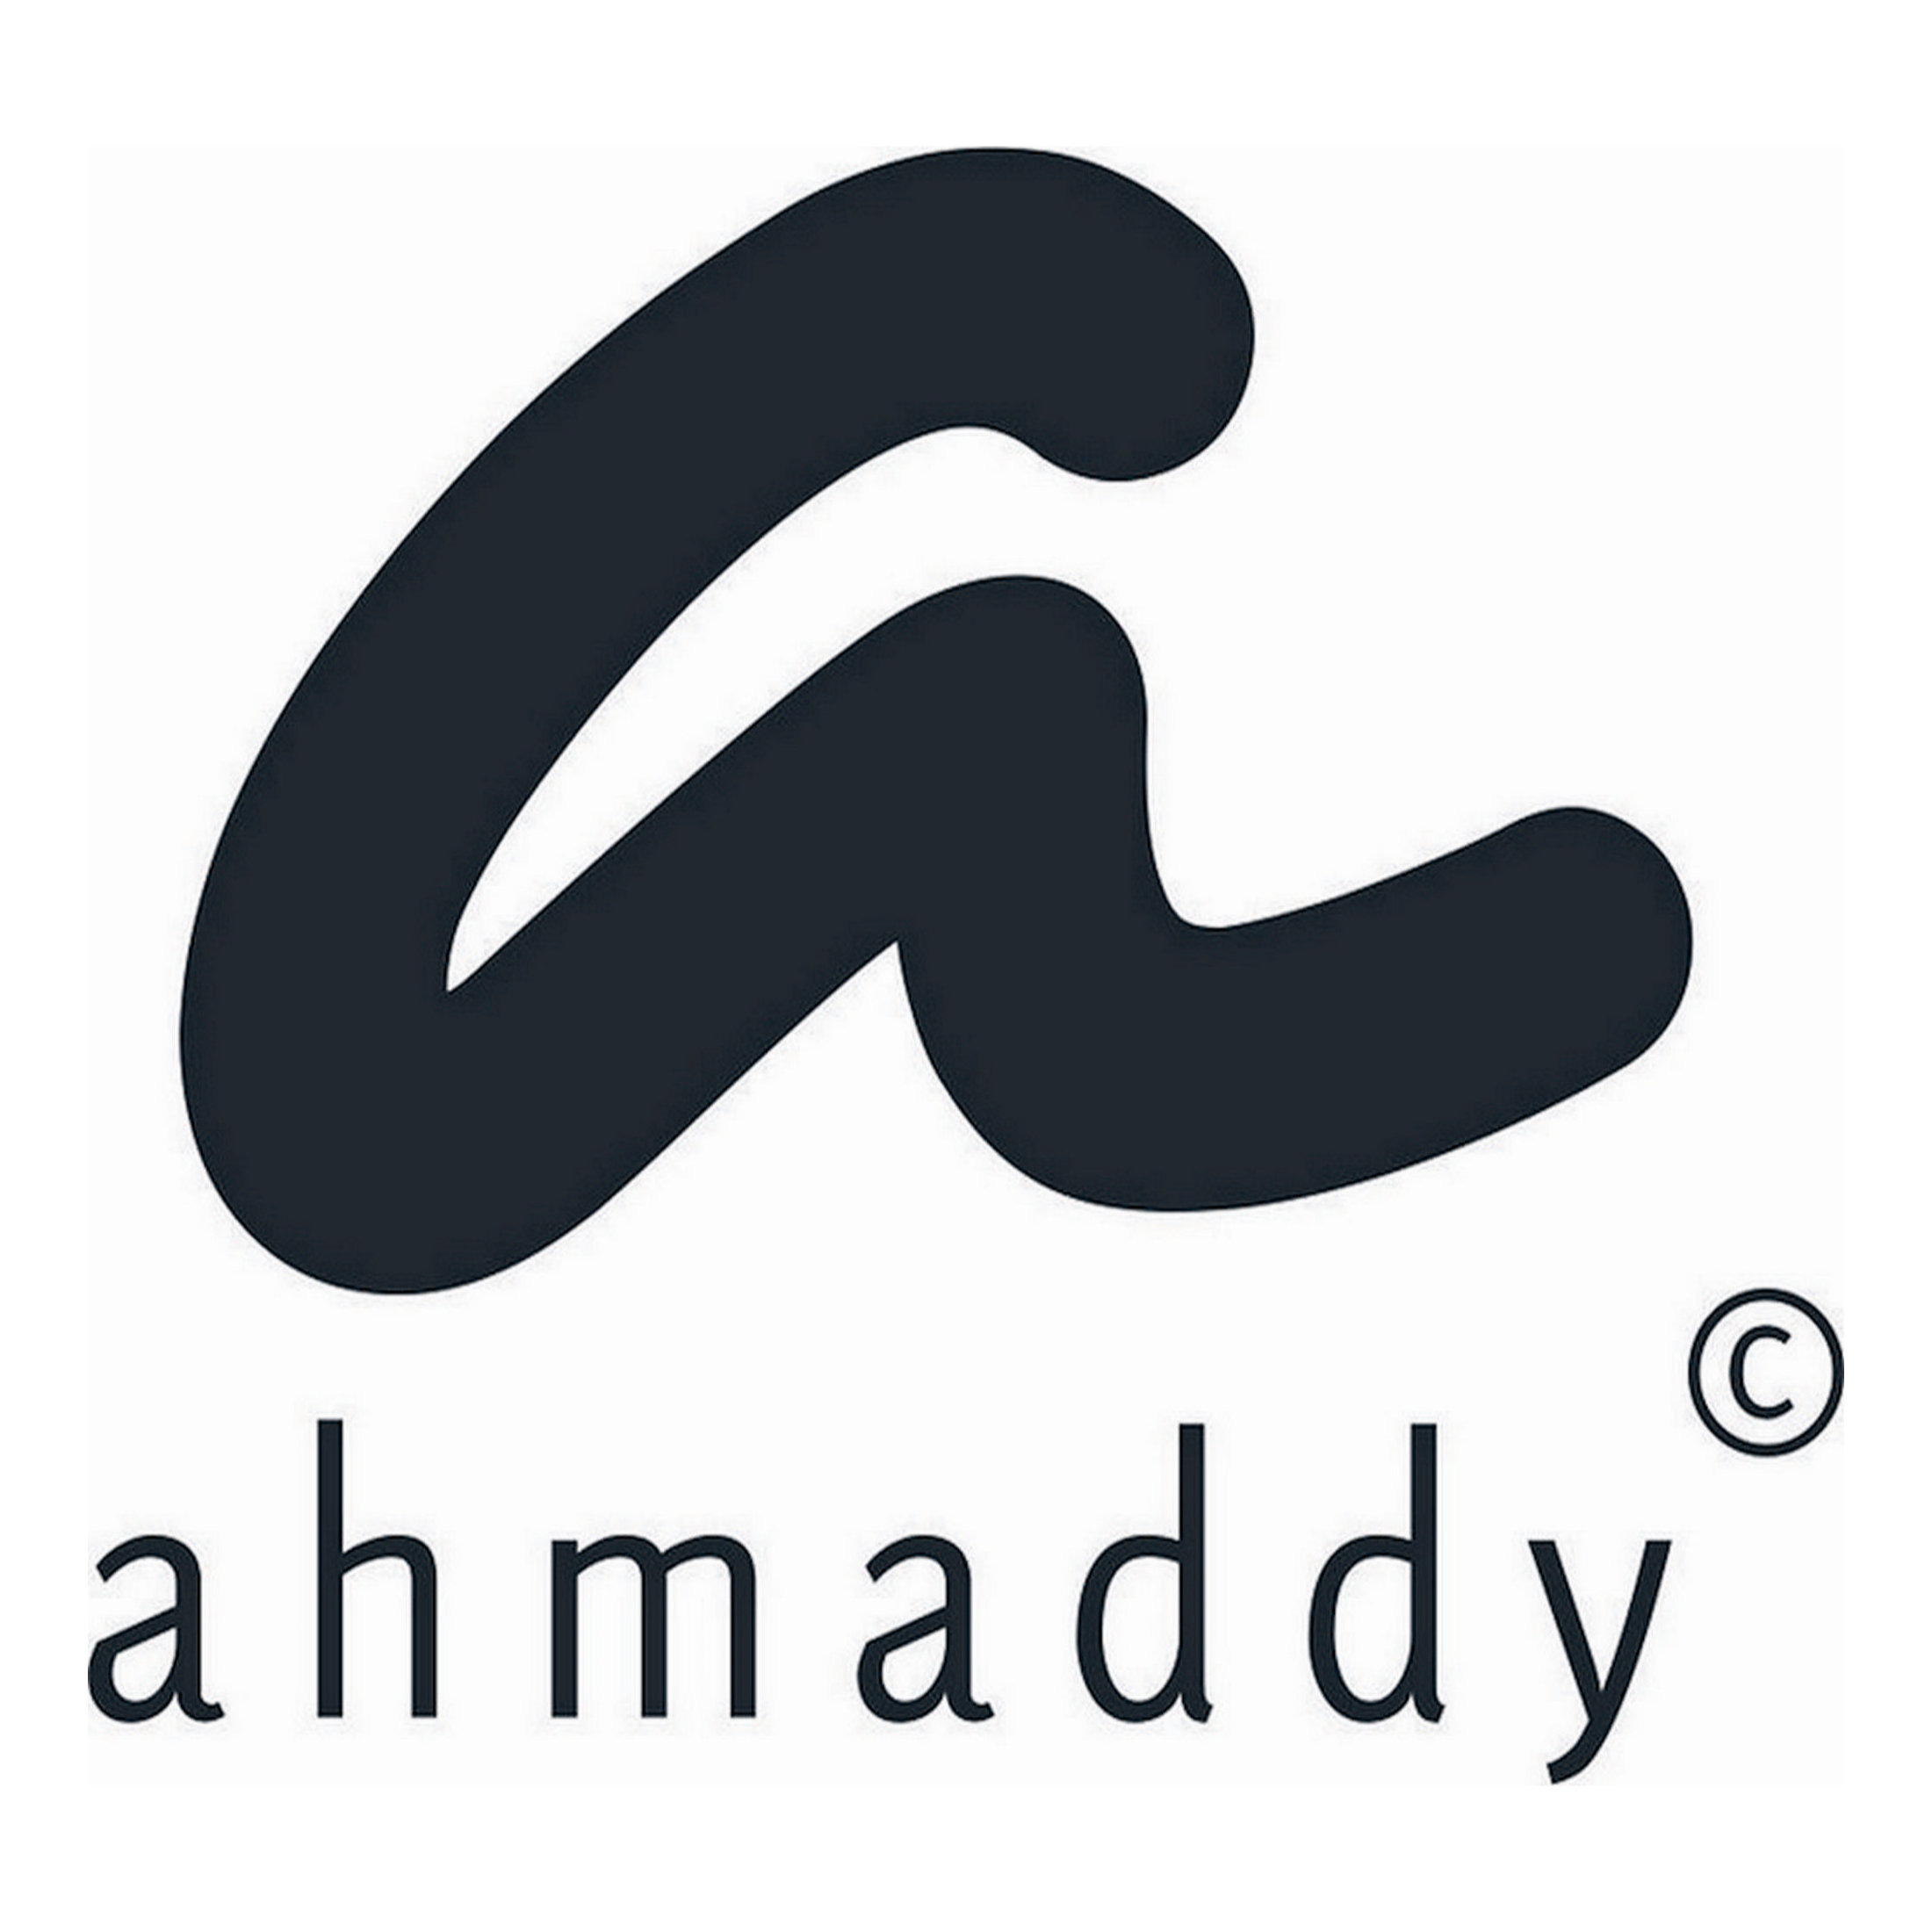 Ahmaddy Premium Scarfs